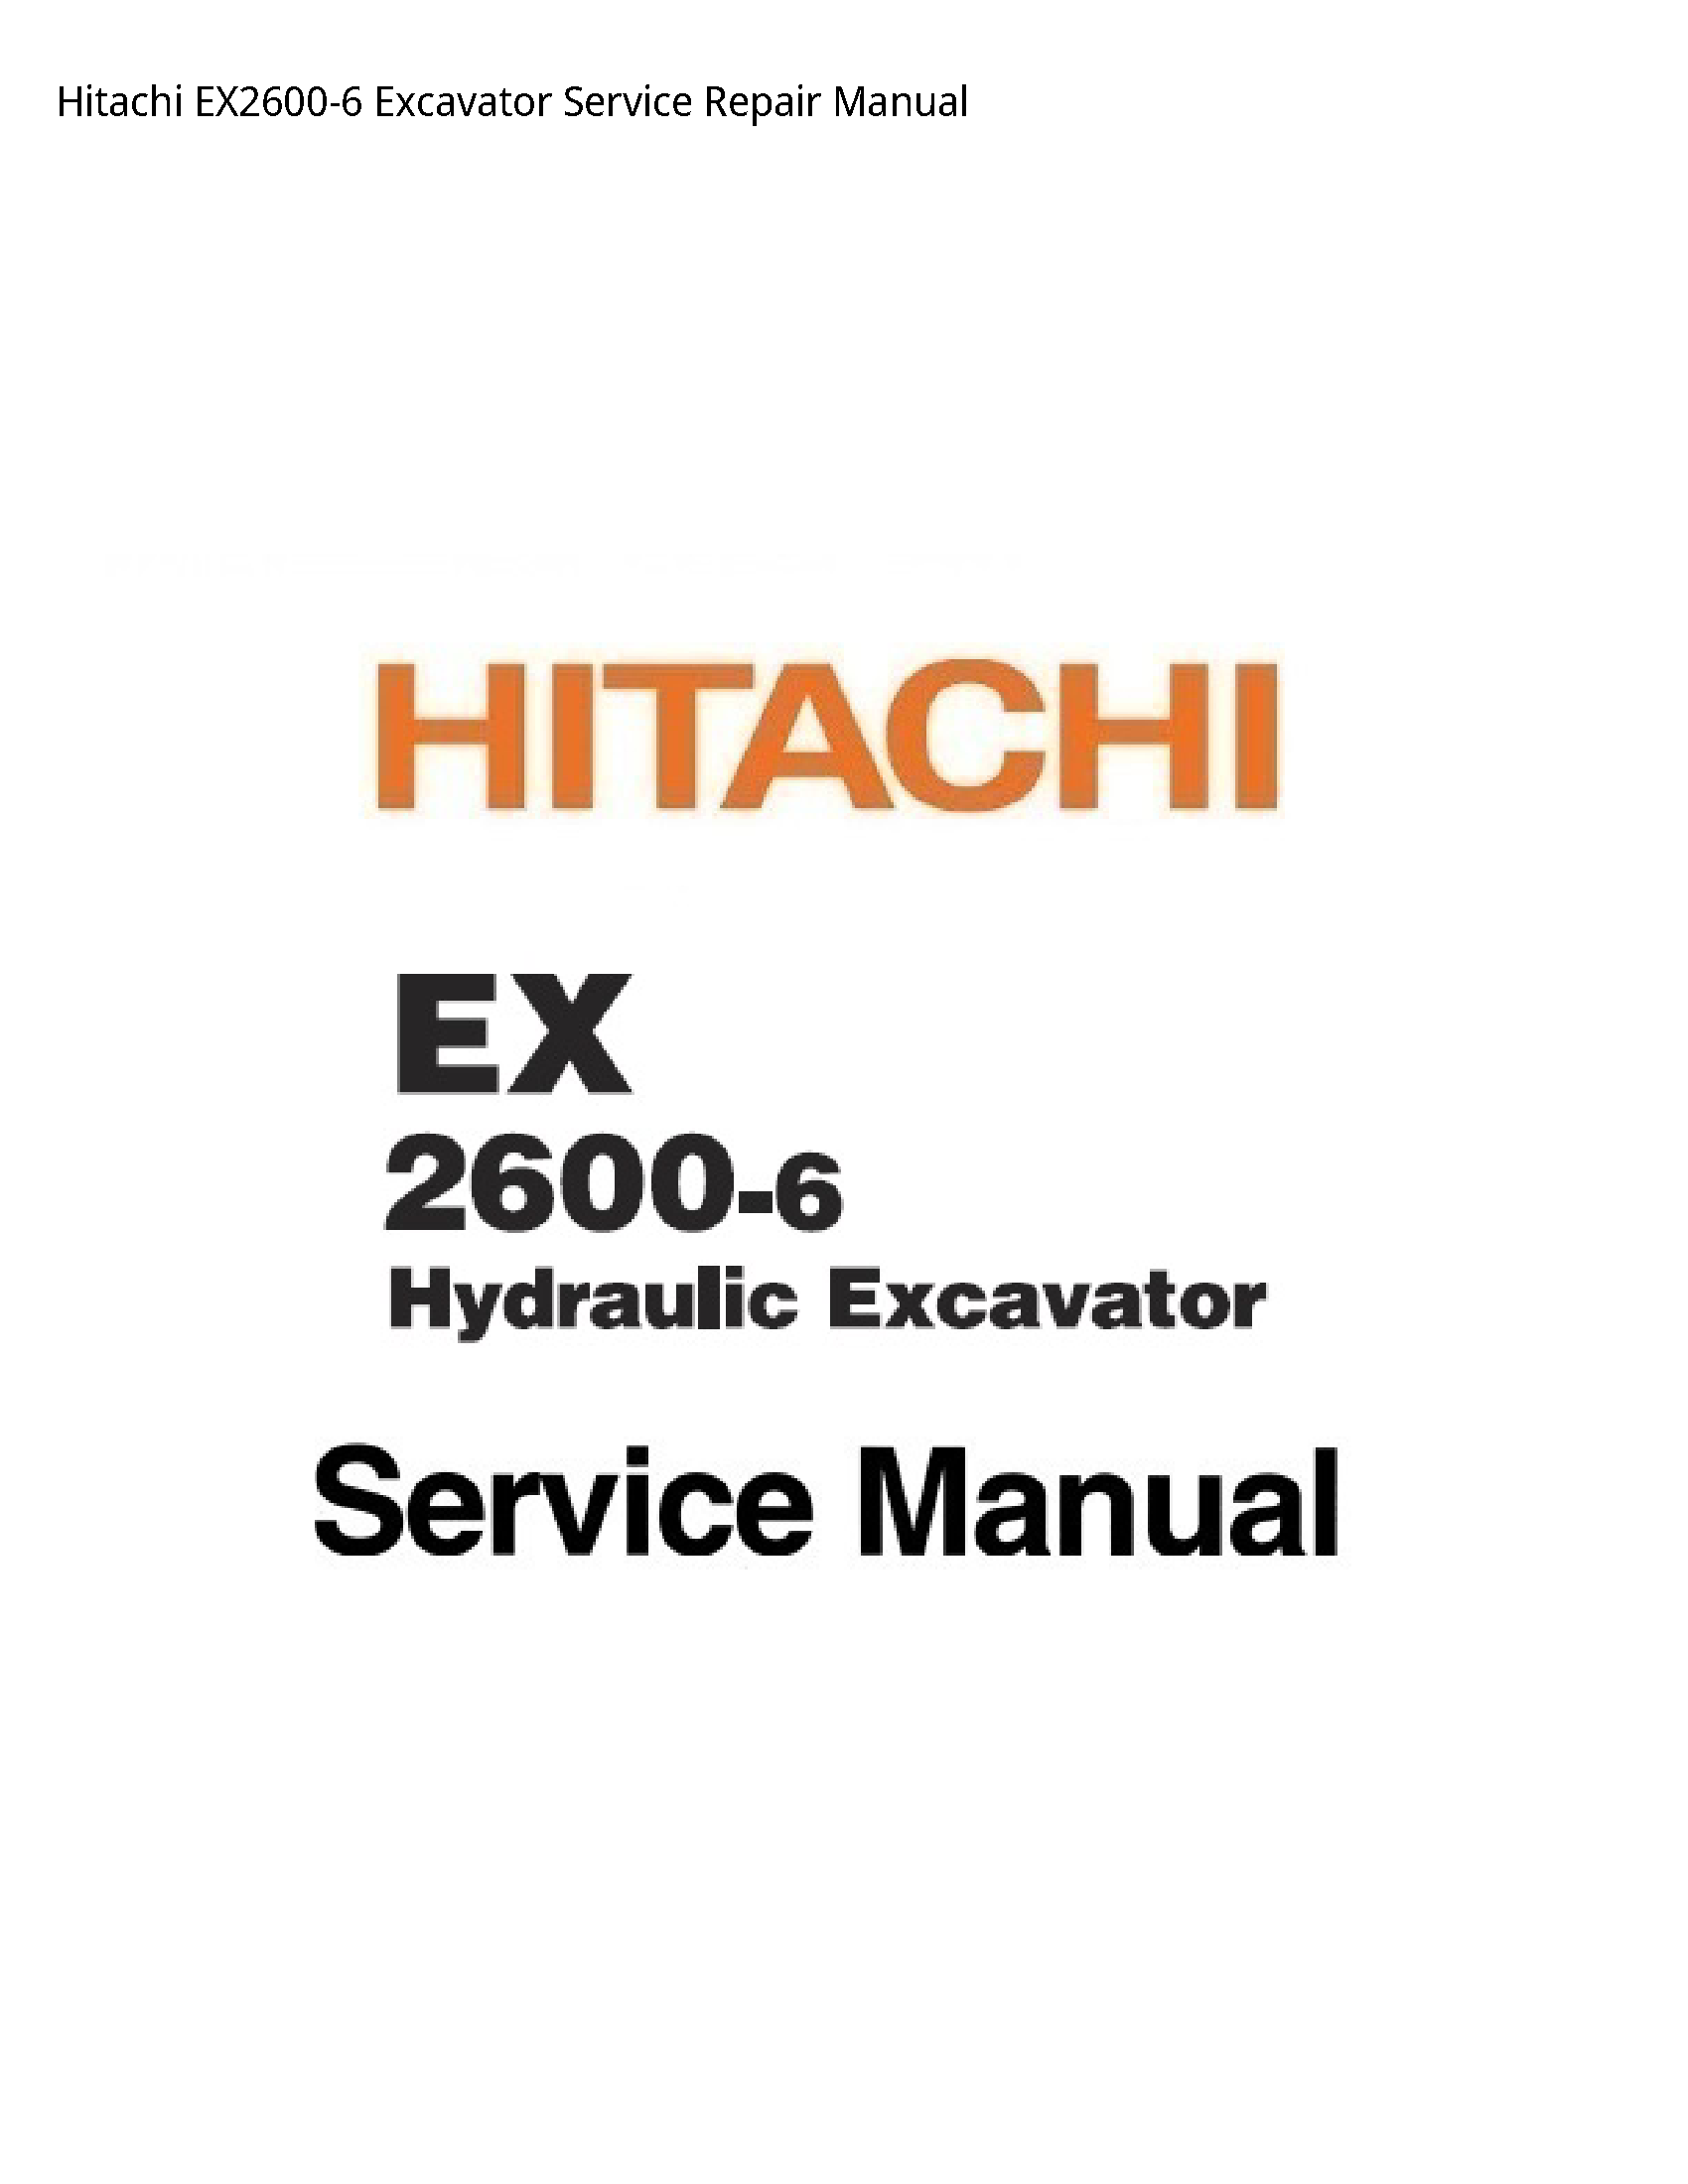 Hitachi EX2600-6 Excavator manual